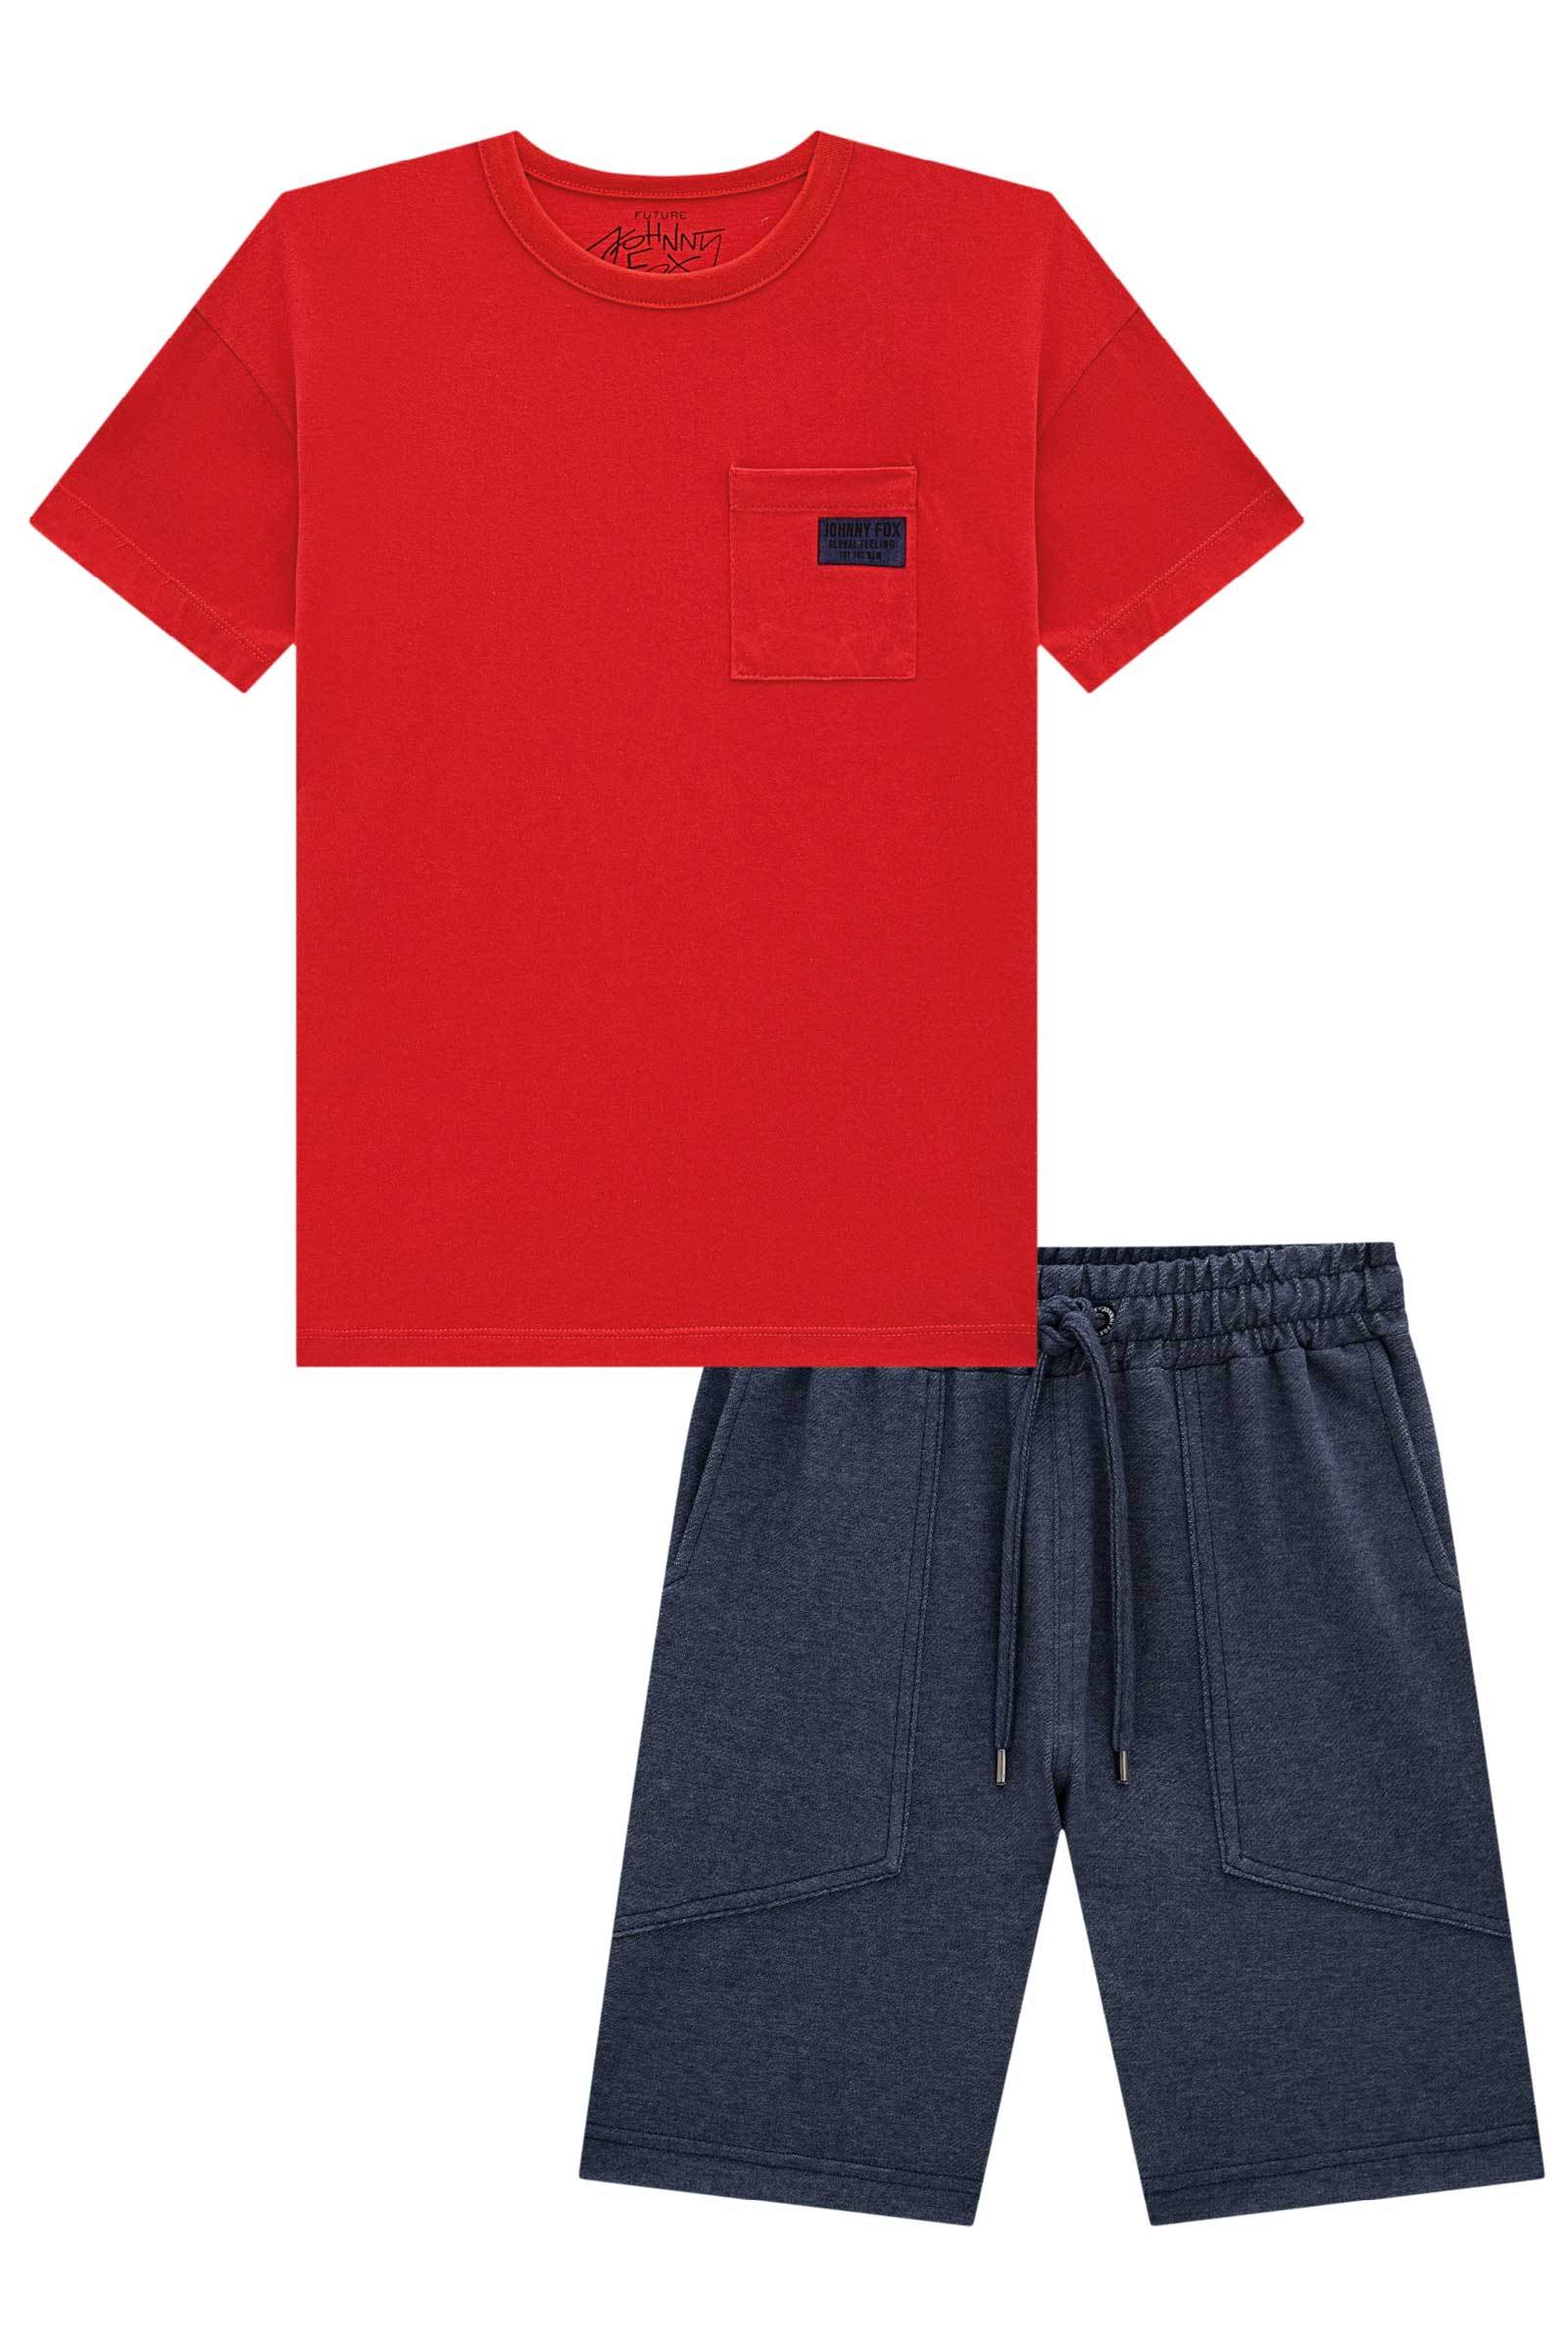 Conjunto de Camiseta em Meia Malha e Bermuda em Cotton Jeans com Elastano 75319 Johnny Fox